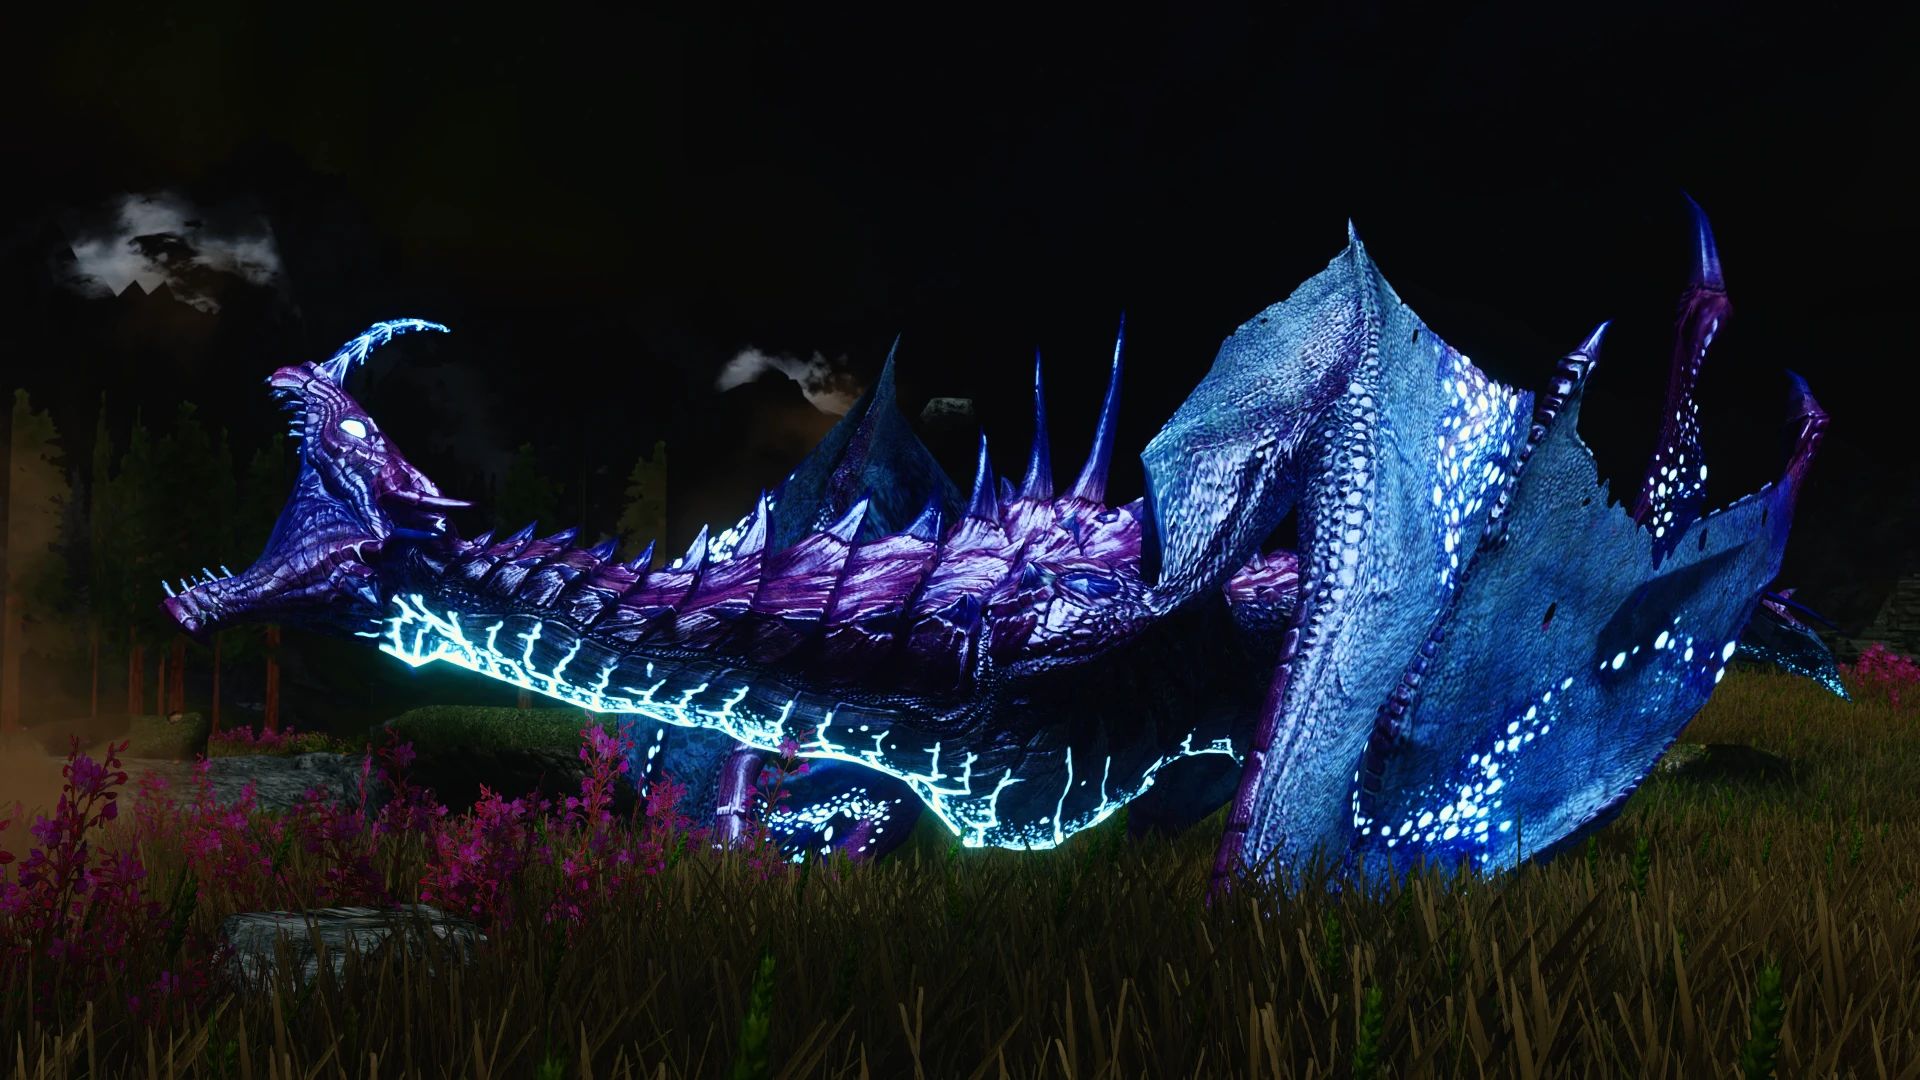 Colorful magic skyrim. Дракон фиолетовый. Драконы скайрим расцветка. Дракон skyrix из игры приключения дракона. Фото окрас дракона.